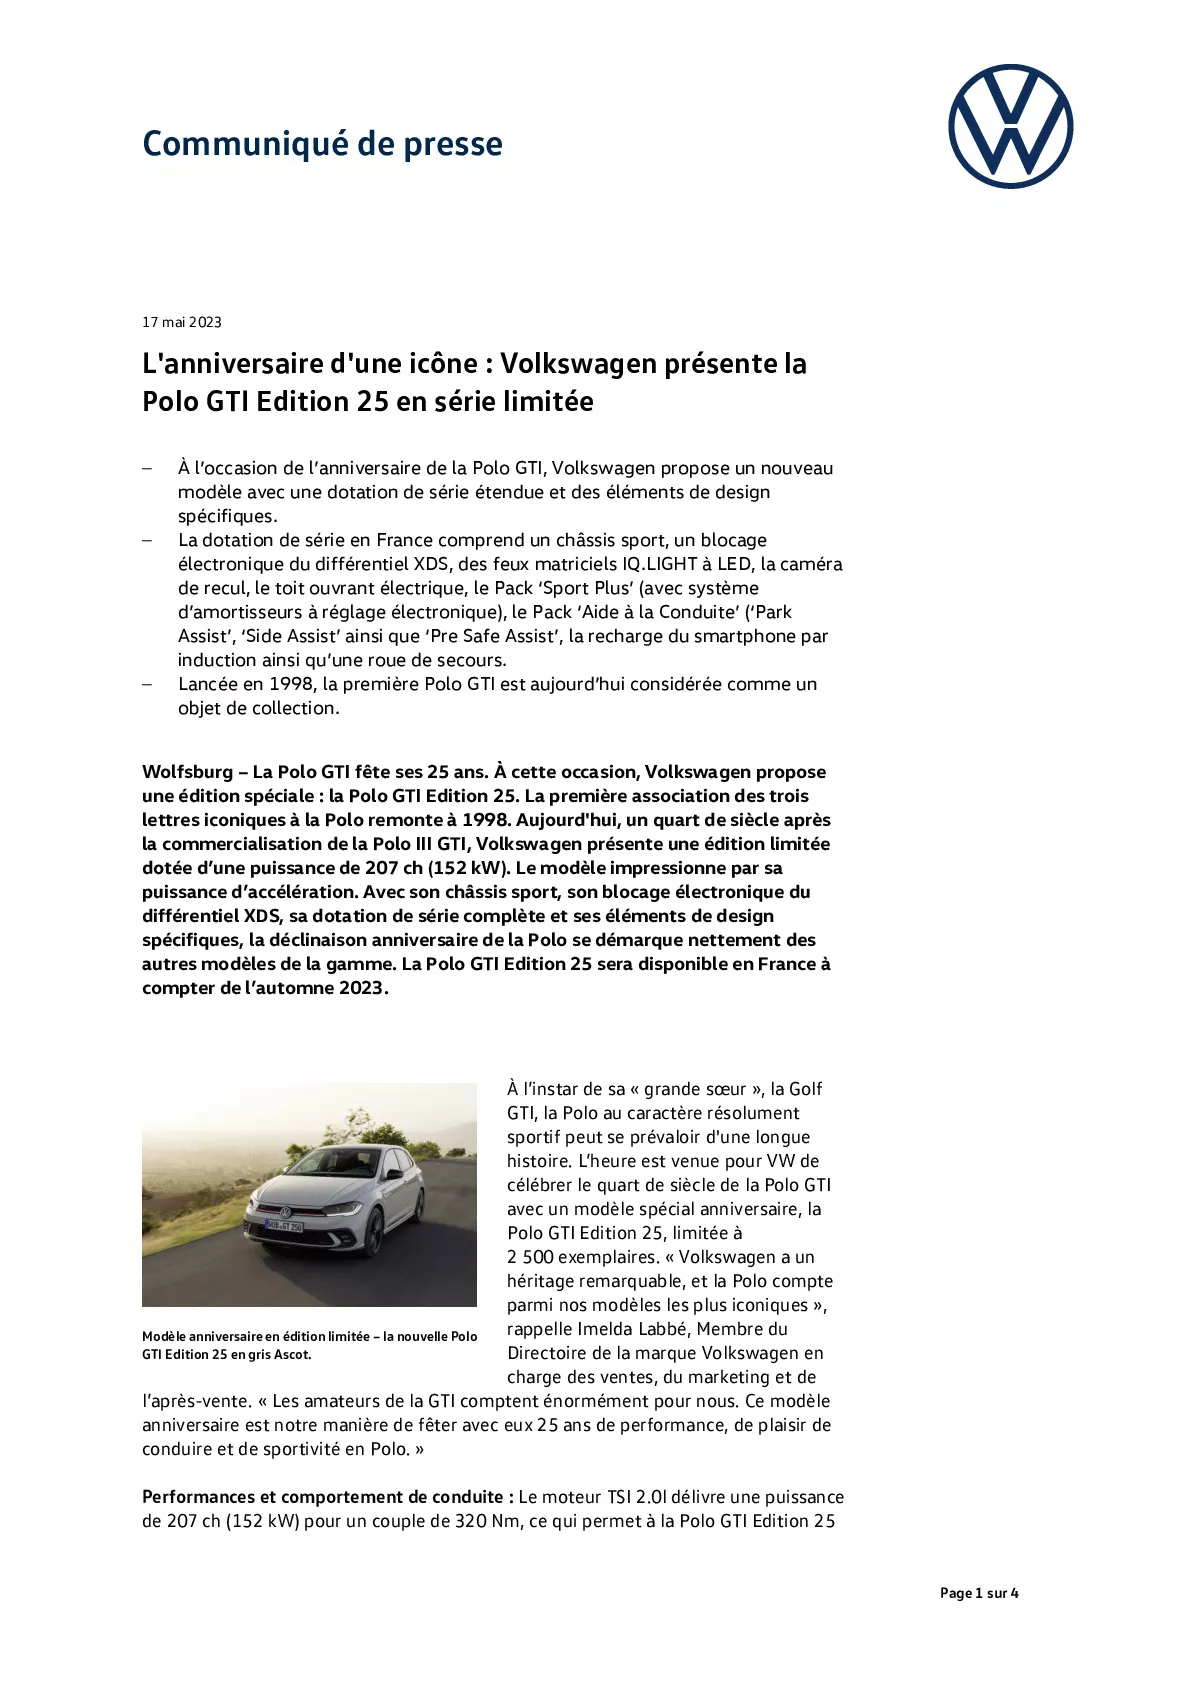 L'anniversaire d'une icône, Volkswagen présente la Polo GTI Edition 25 en série limitée